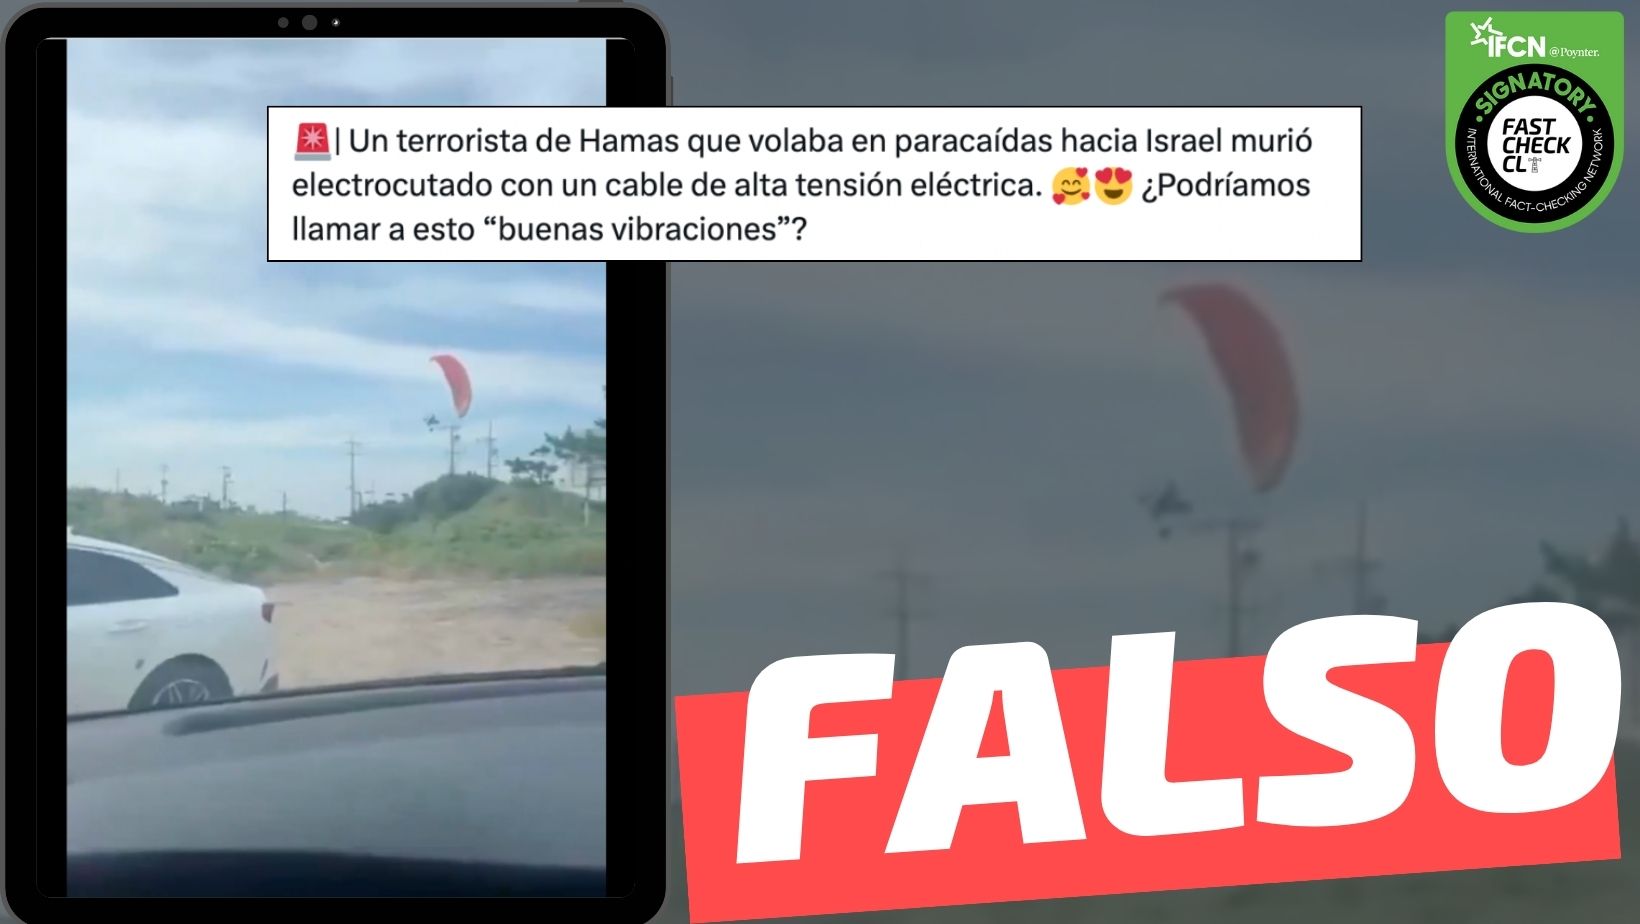 You are currently viewing (Video) “Un terrorista de Hamás que volaba en paracaídas hacia Israel murió electrocutado con un cable de alta tensión eléctrica”: #Falso